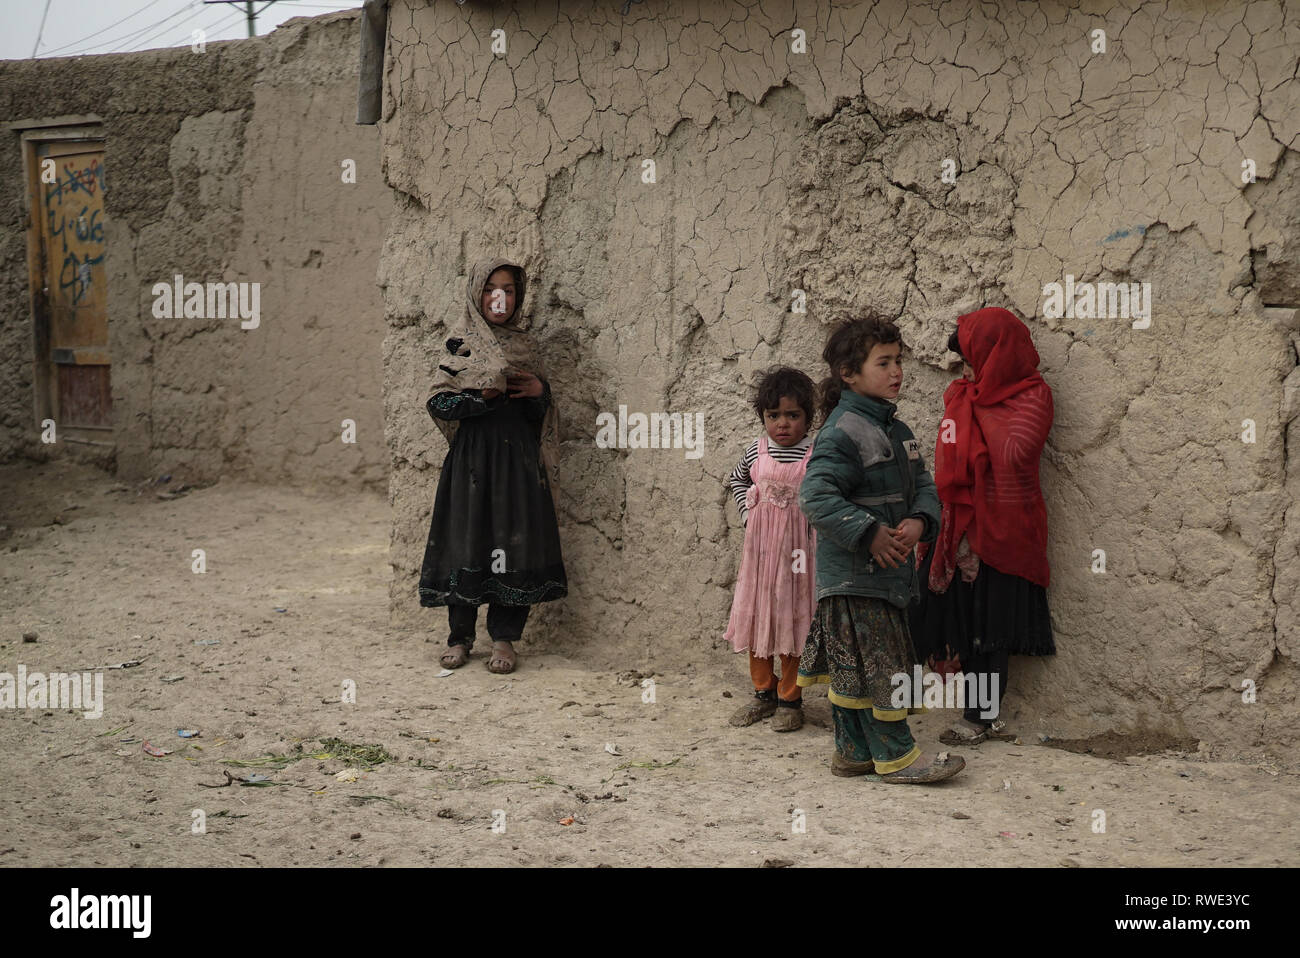 Menschen in einem FLÜCHTLINGSLAGER am Stadtrand von Kabul, Afghanistan, 28. Feb 2019. Die meisten der 1000 Familien verlassen im Lager links der afghanischen Provinz Helmand vor 13 Jahren, als die Taliban eine massive militärische Offensive an der afghanischen Armee und Streitkräfte der Koalition in Helmand gestartet. Jetzt die meisten Haushalte mehr als 10 Mitglieder haben, entsprechend der Camps Führer, sie haben keine medizinischen Zentrum im Camp und der Schule kann nur eine max. 80 Kinder unterrichten. Die schlechte Infrastruktur und Hygiene Krankheiten, wie gastrointestinale Infektionen, Infektionen der Haut und der Atemwege überwiegend. Stockfoto